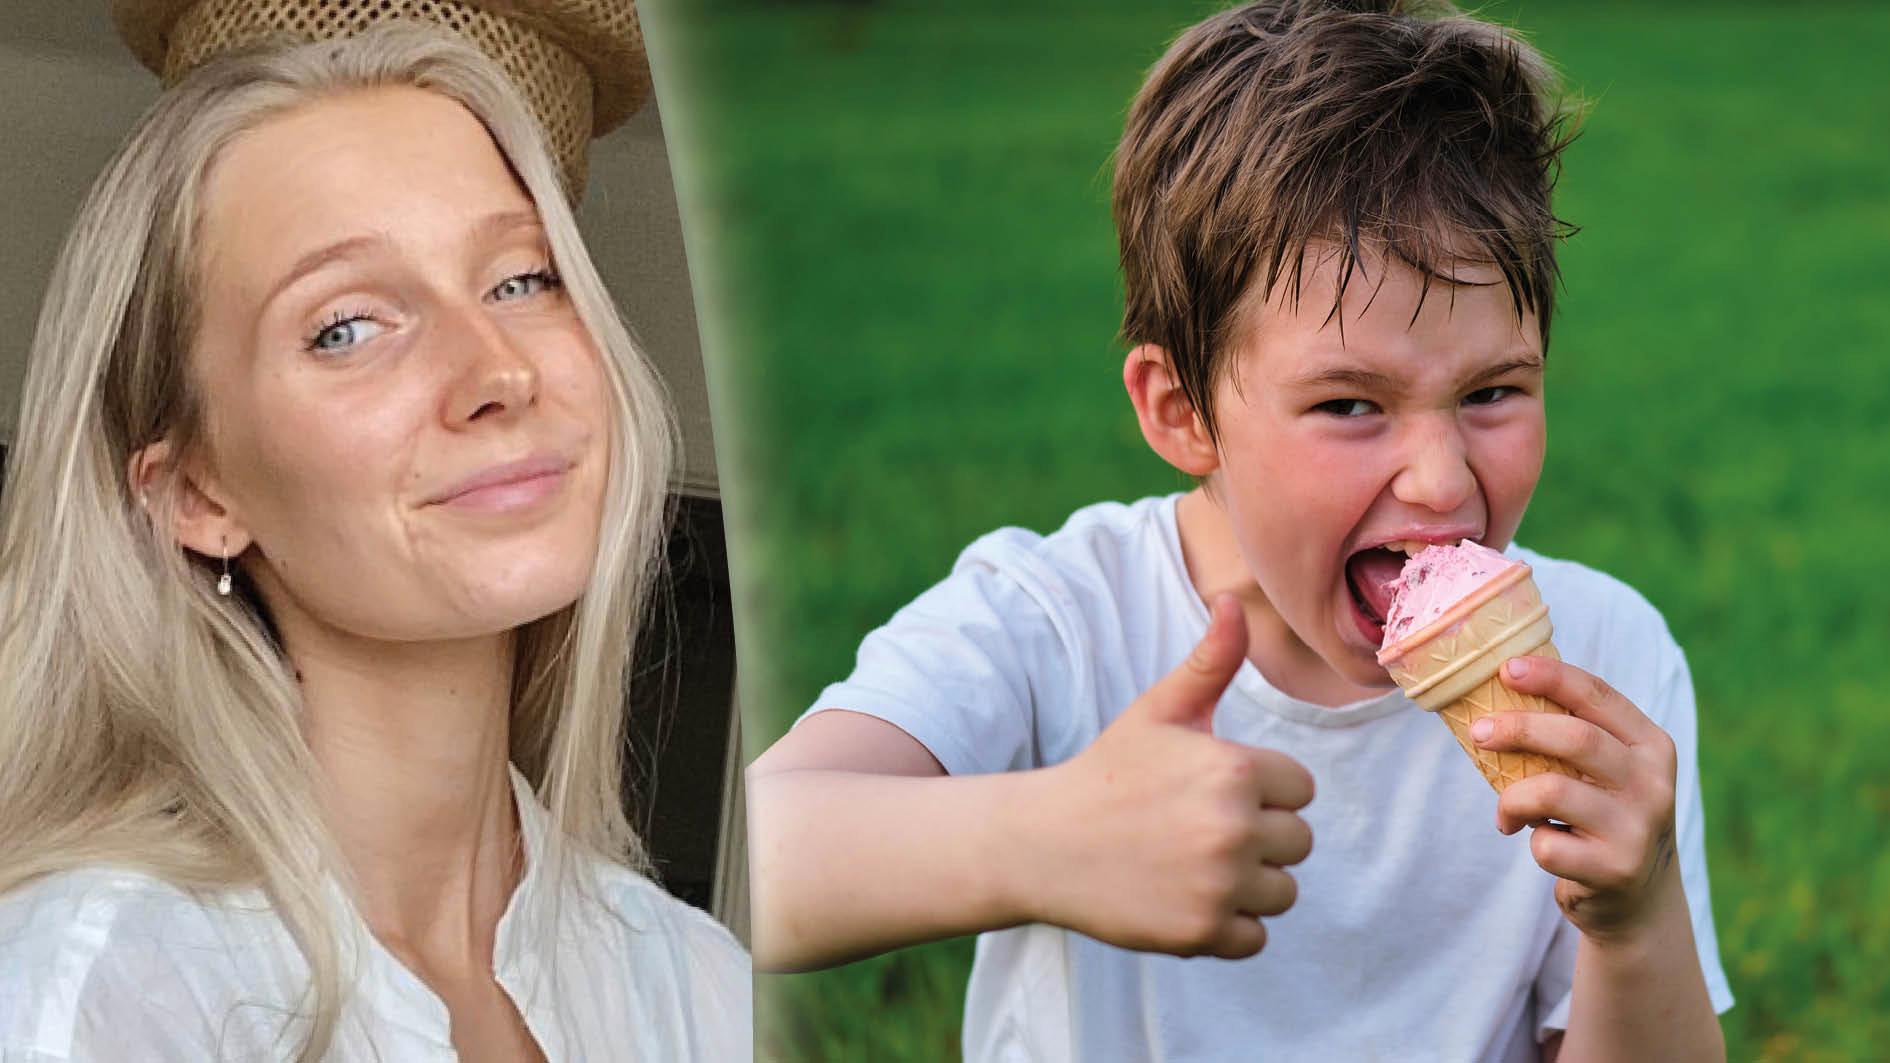 Ätstörningsproblematik drabbar allt yngre. Det finns sätt att prata om kost och hälsa på – men Karolinska Institutets familjestödsprogram till skolorna är långt ifrån rätt. En glass ska fortsätta få vara en god glass hos våra barn, skriver Moa Lunneborg.